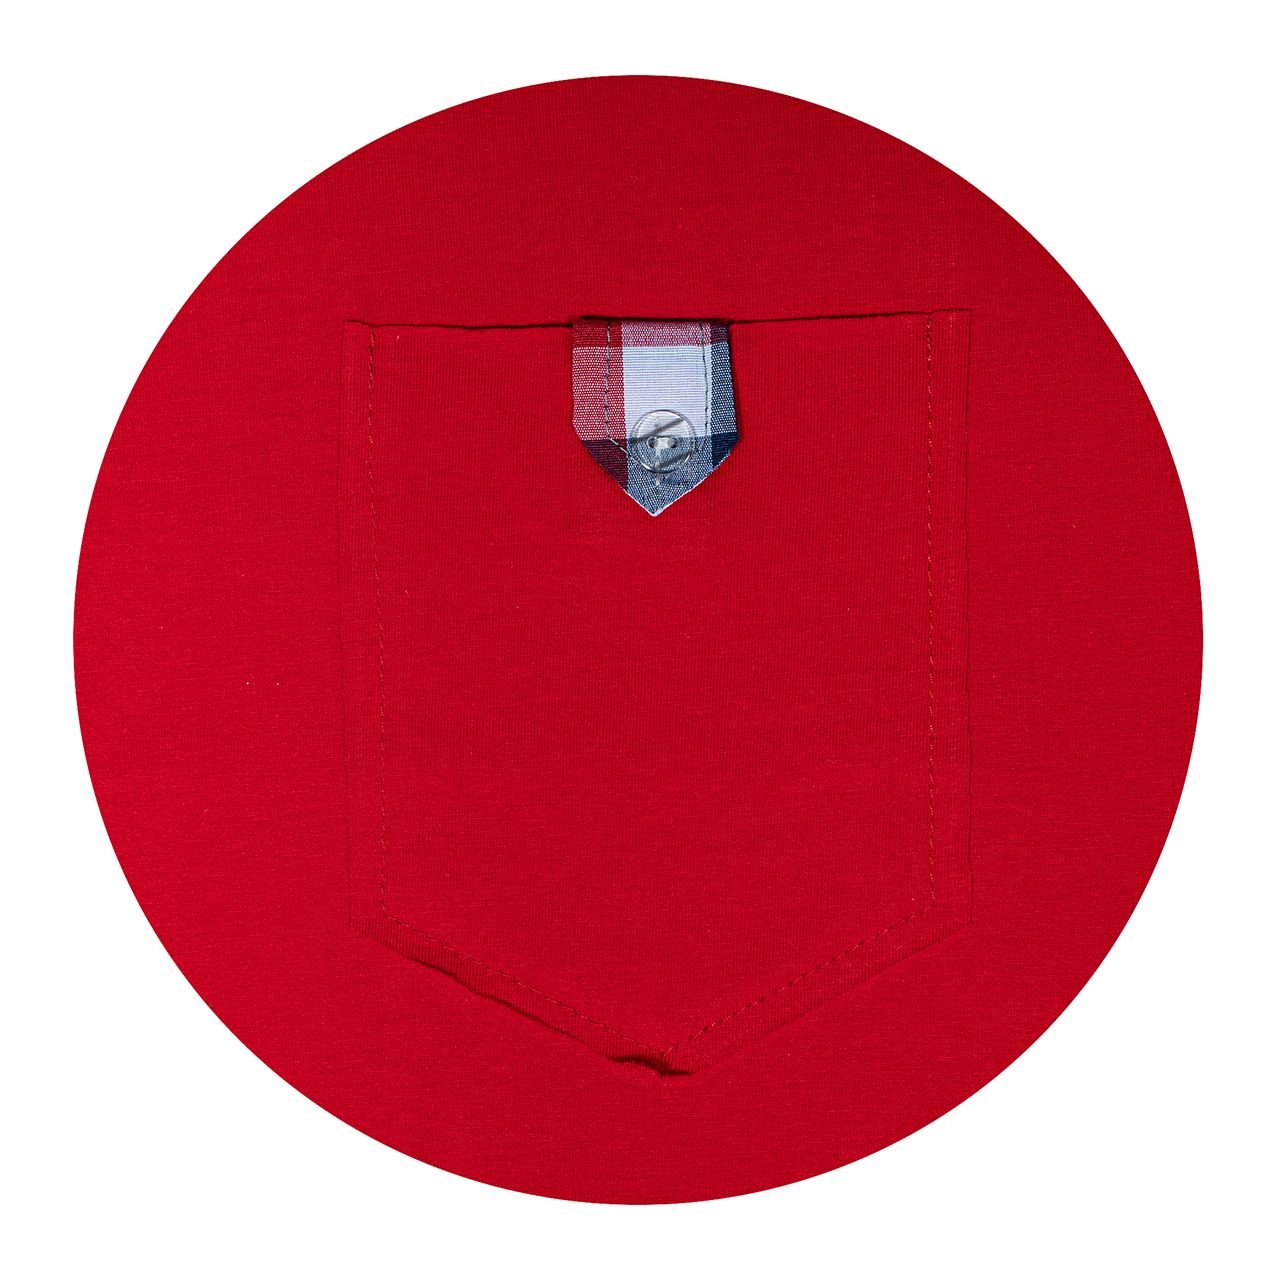 ست تی شرت و شلوار مردانه ساروک مدل STSHNJ110 -07 رنگ قرمز -  - 3